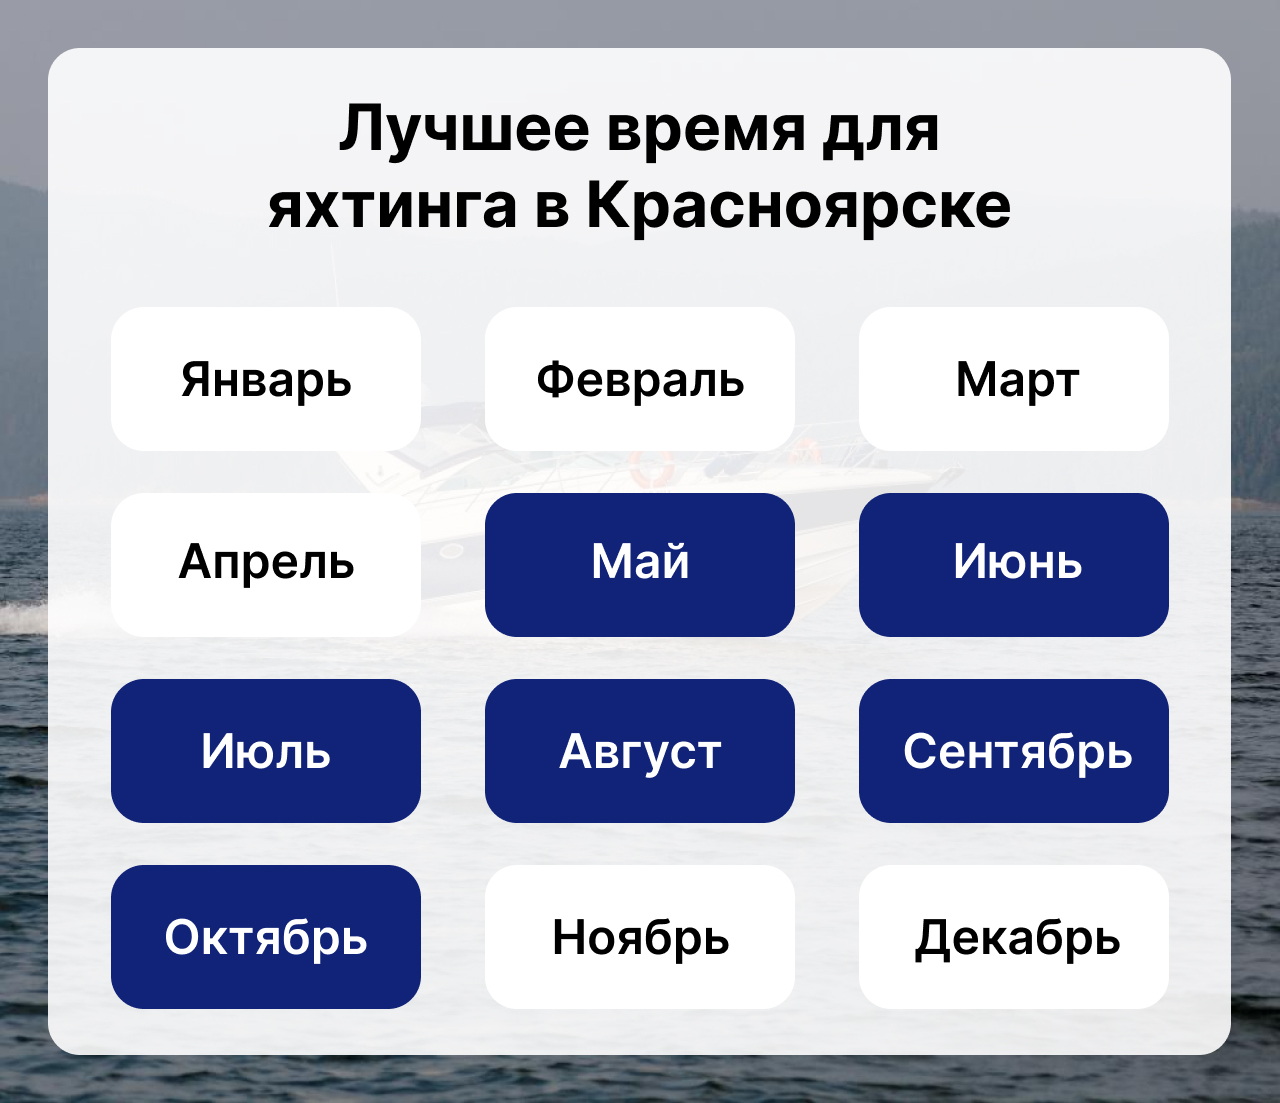 Лучшее время для яхтинга в Красноярске, когда сезон яхтинга в Красноярске, календарь яхтинга в Красноярске.